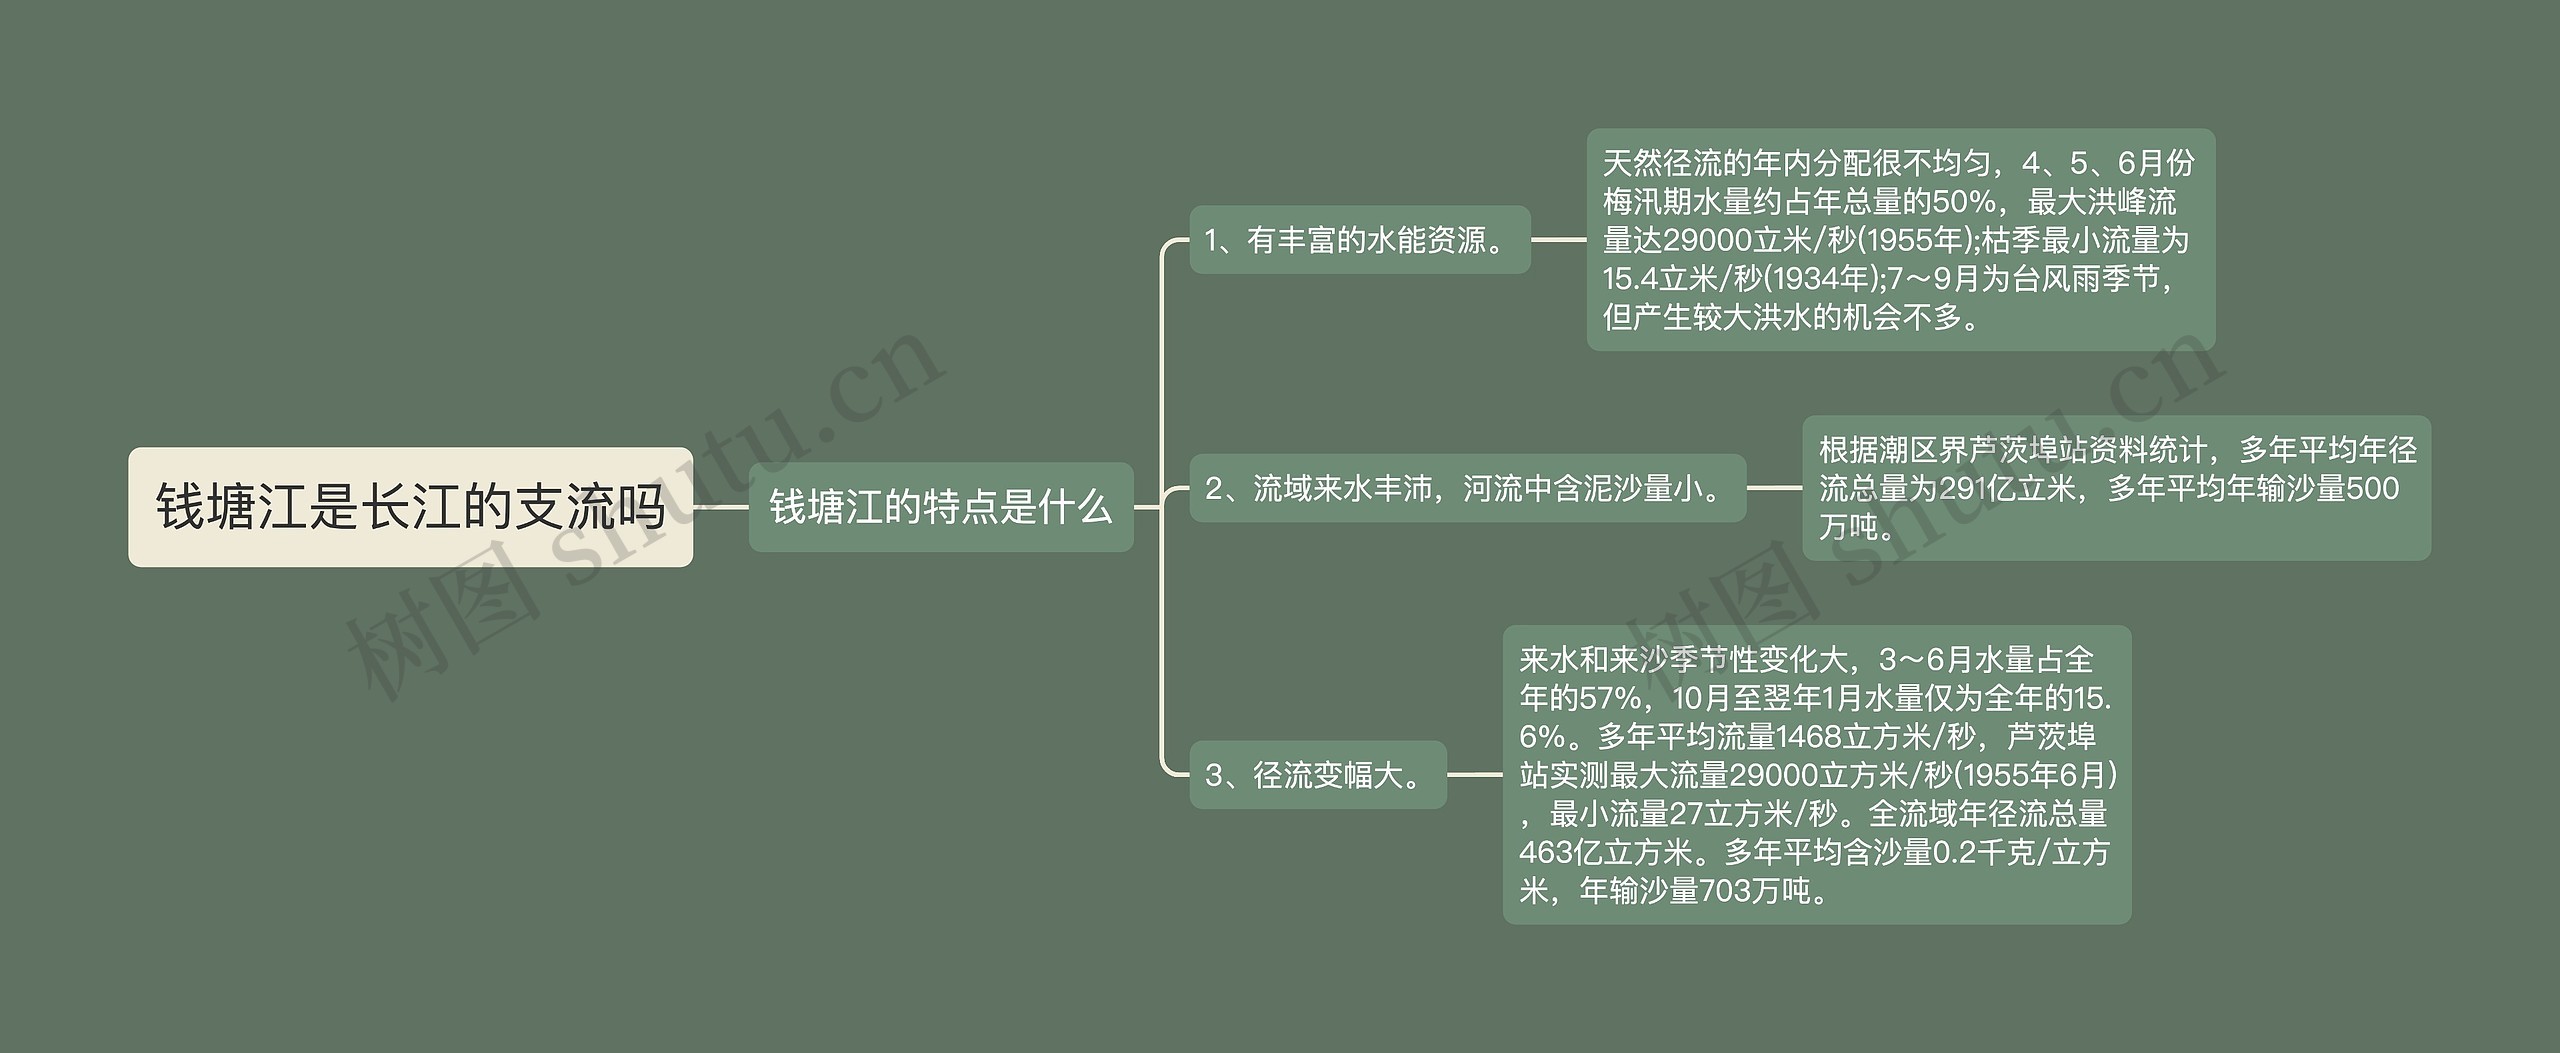 钱塘江是长江的支流吗